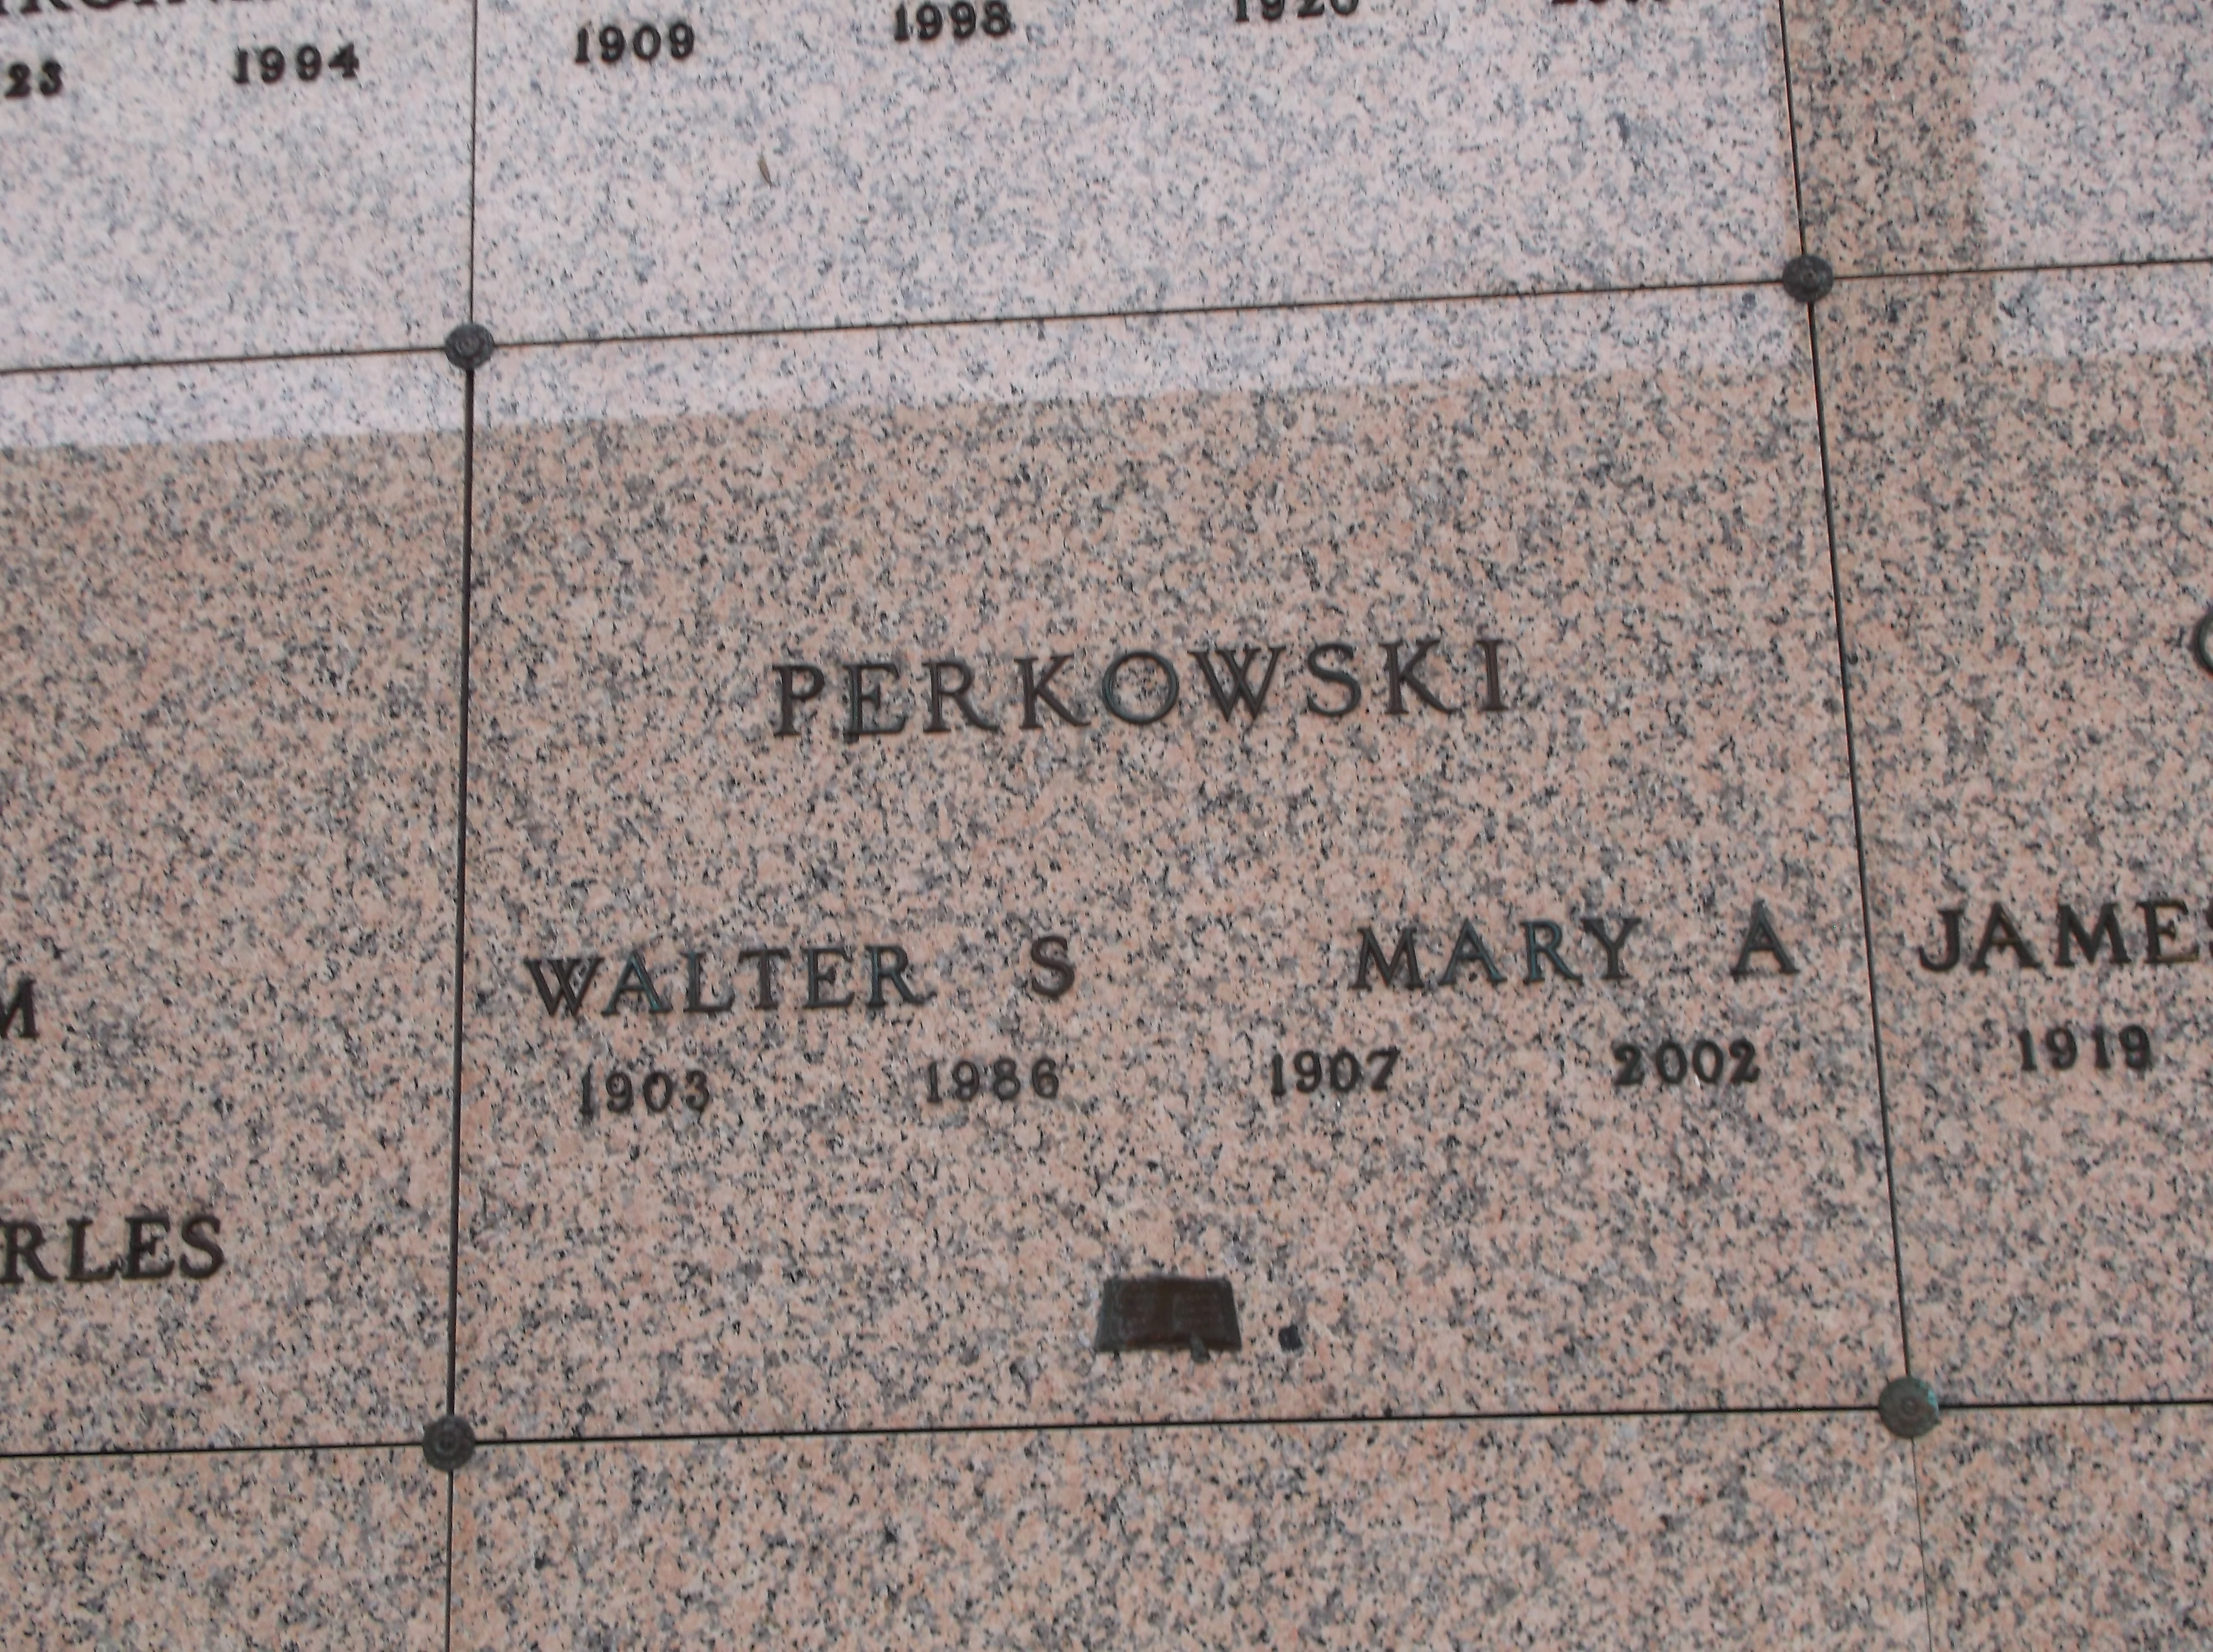 Walter S Perkowski